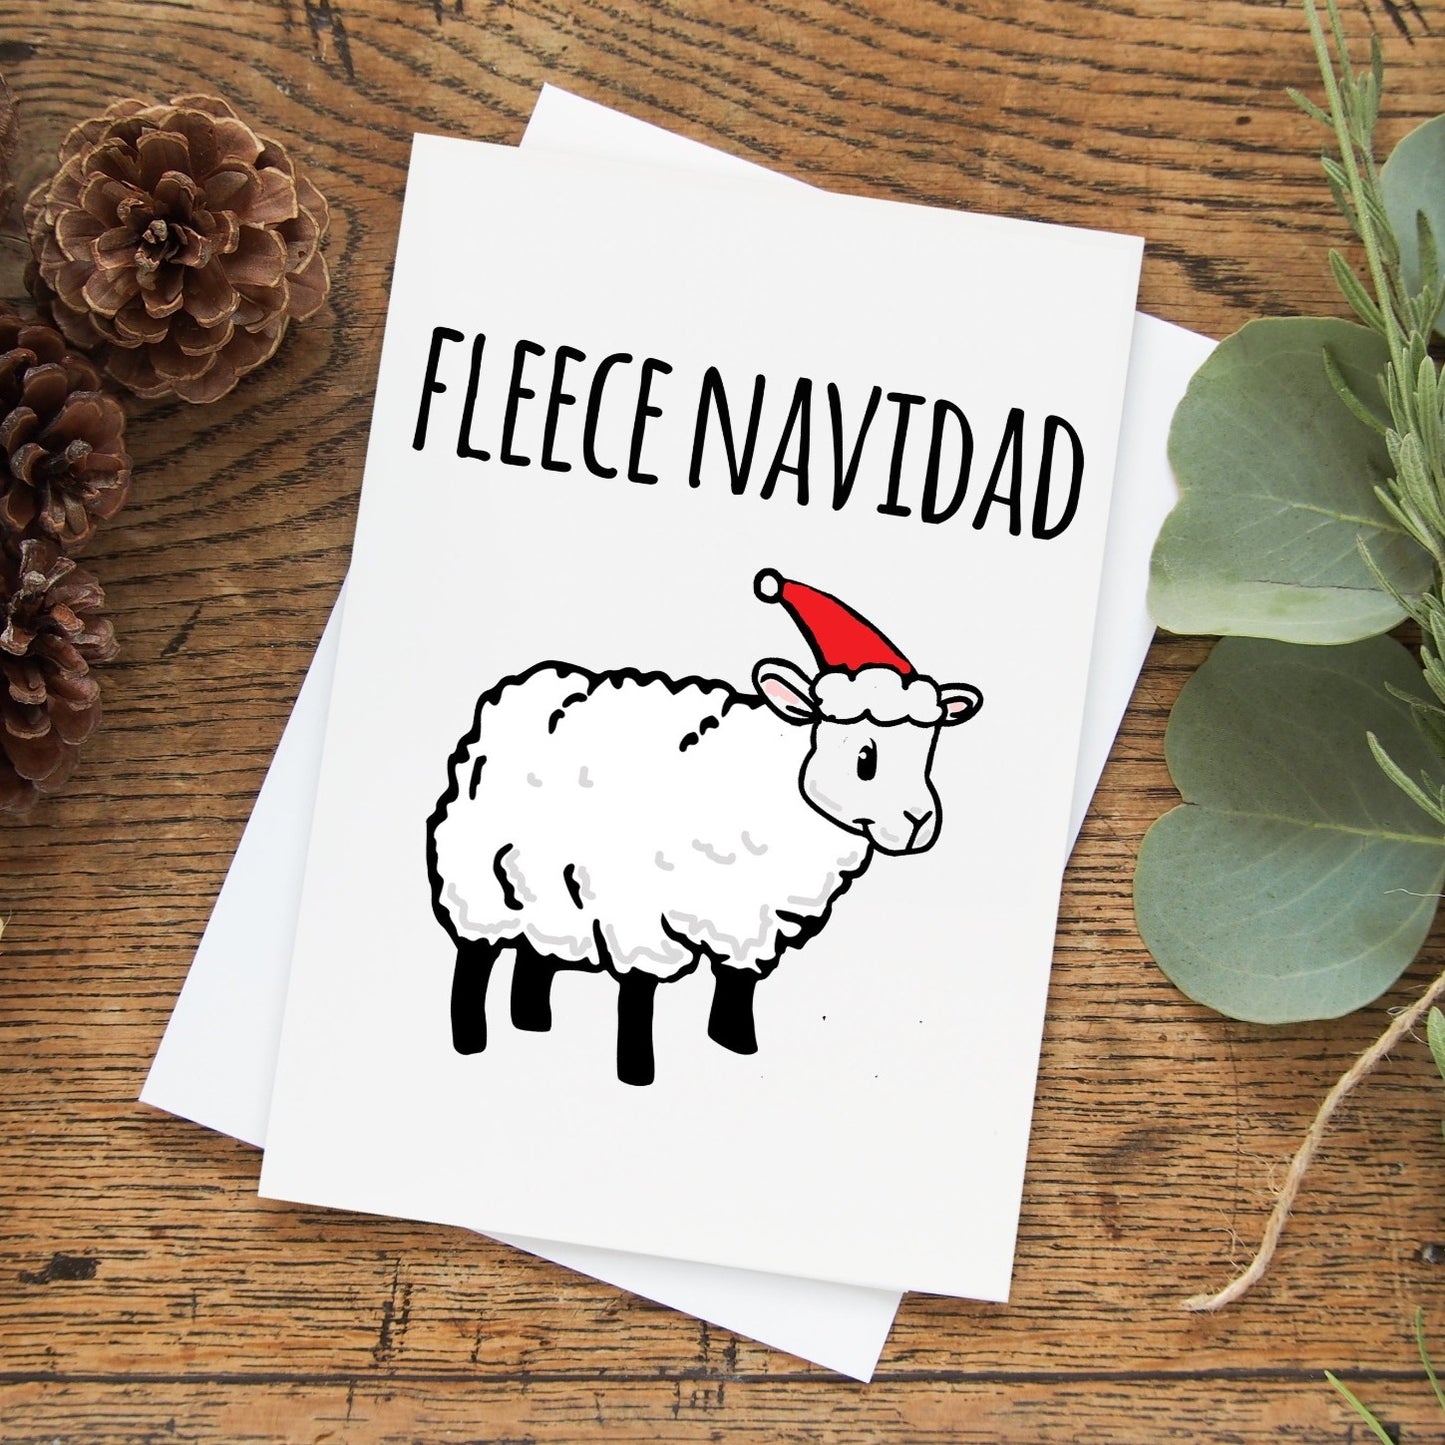 SALE - Fleece Navidad - Holiday Greeting Card